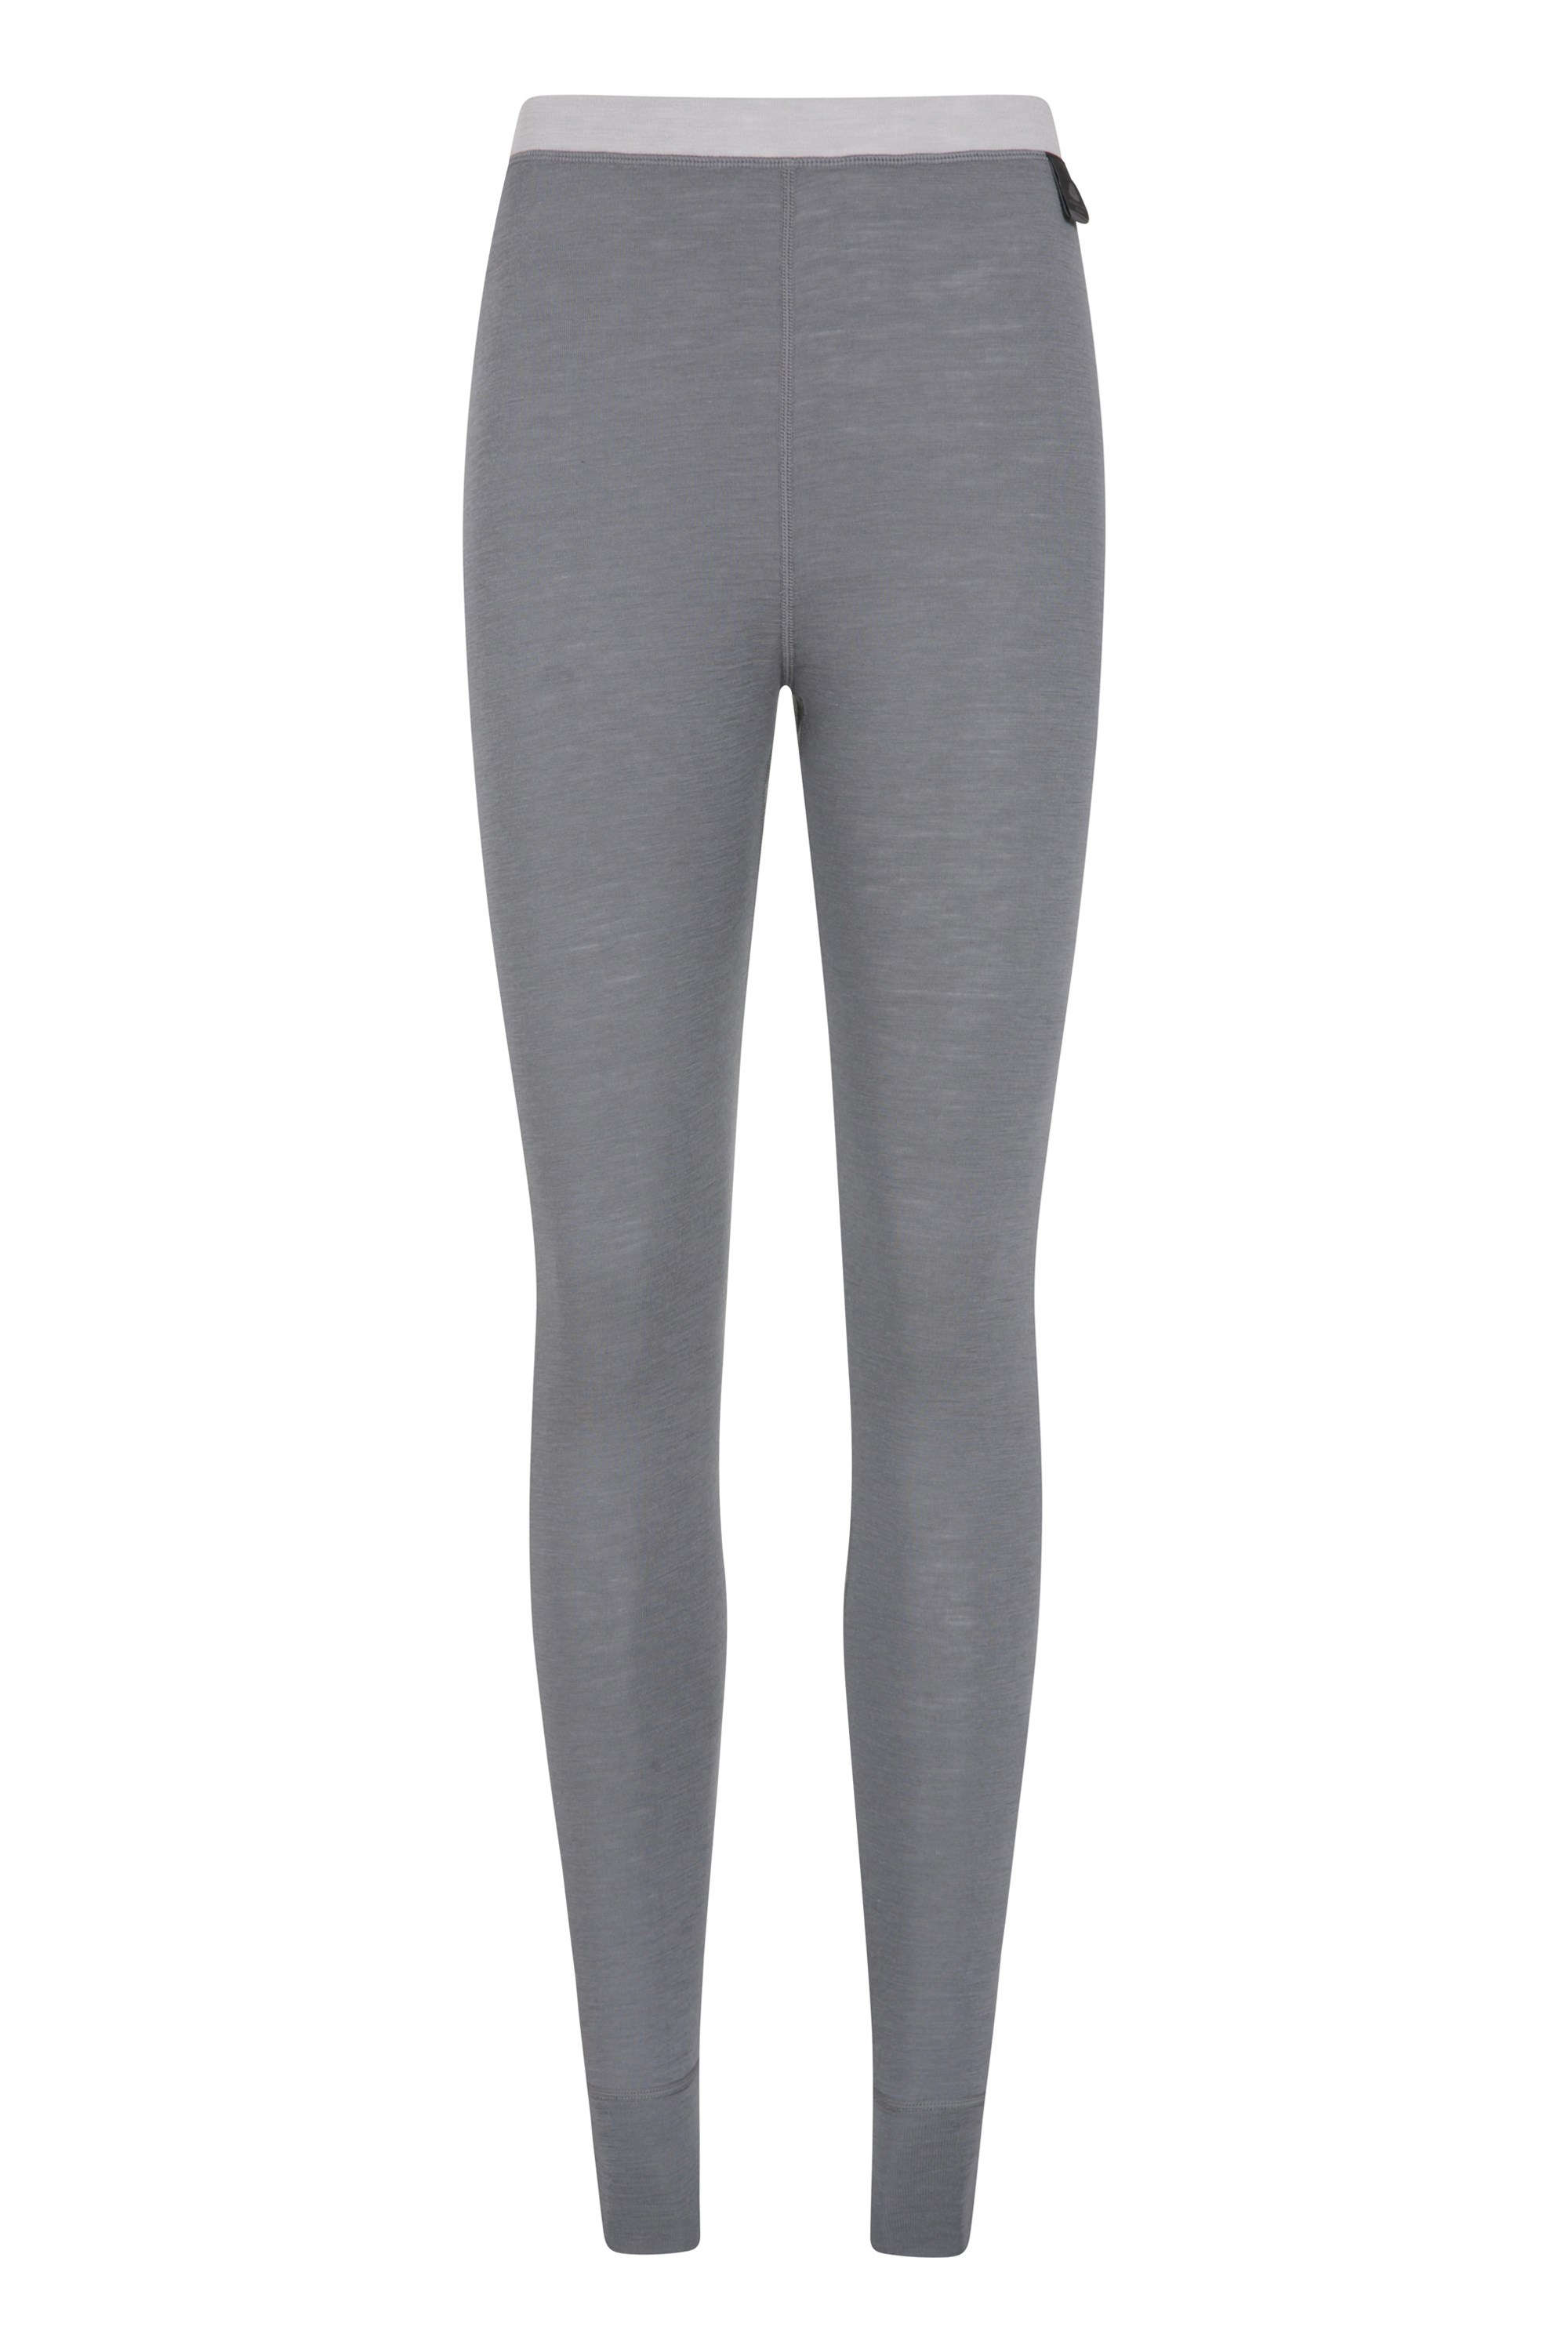 Merino Womens Pants - Grey